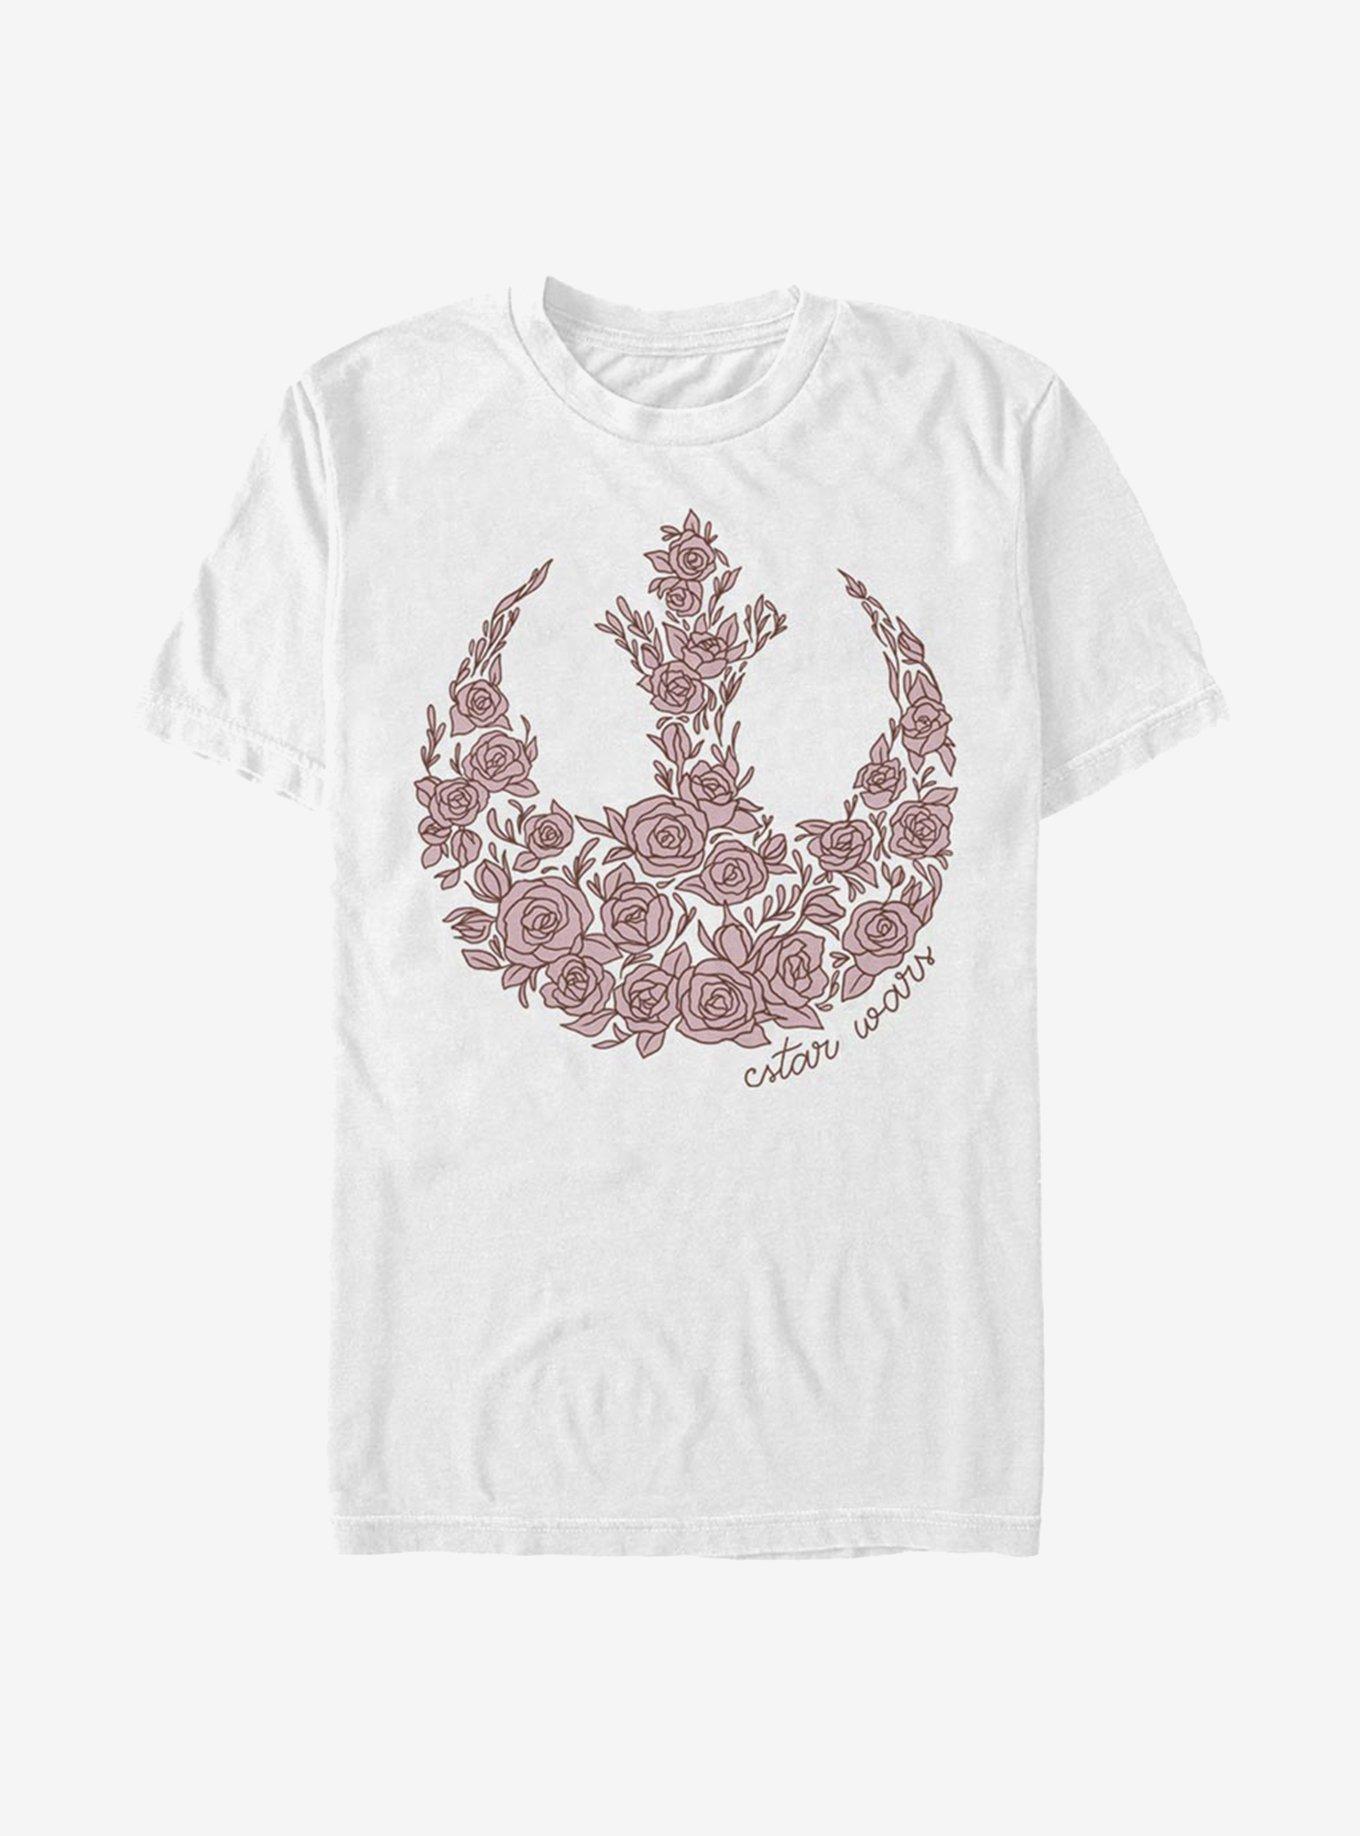 Star Wars Rose Rebel T-Shirt, WHITE, hi-res